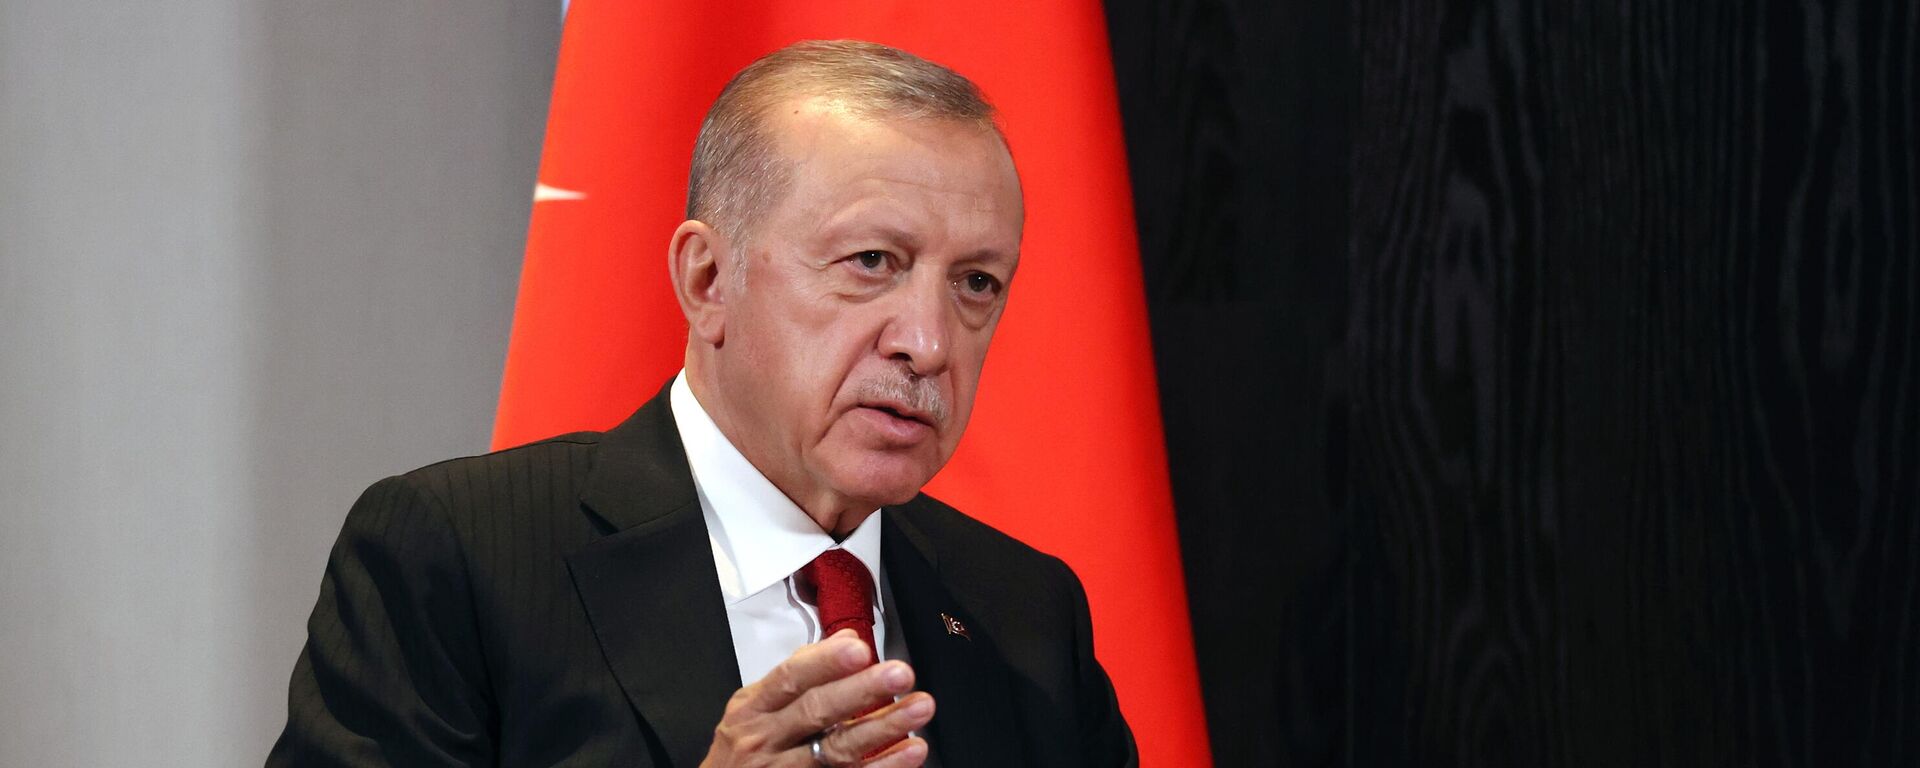 Recep Tayyip Erdogan, presidente de Turquía - Sputnik Mundo, 1920, 04.11.2022